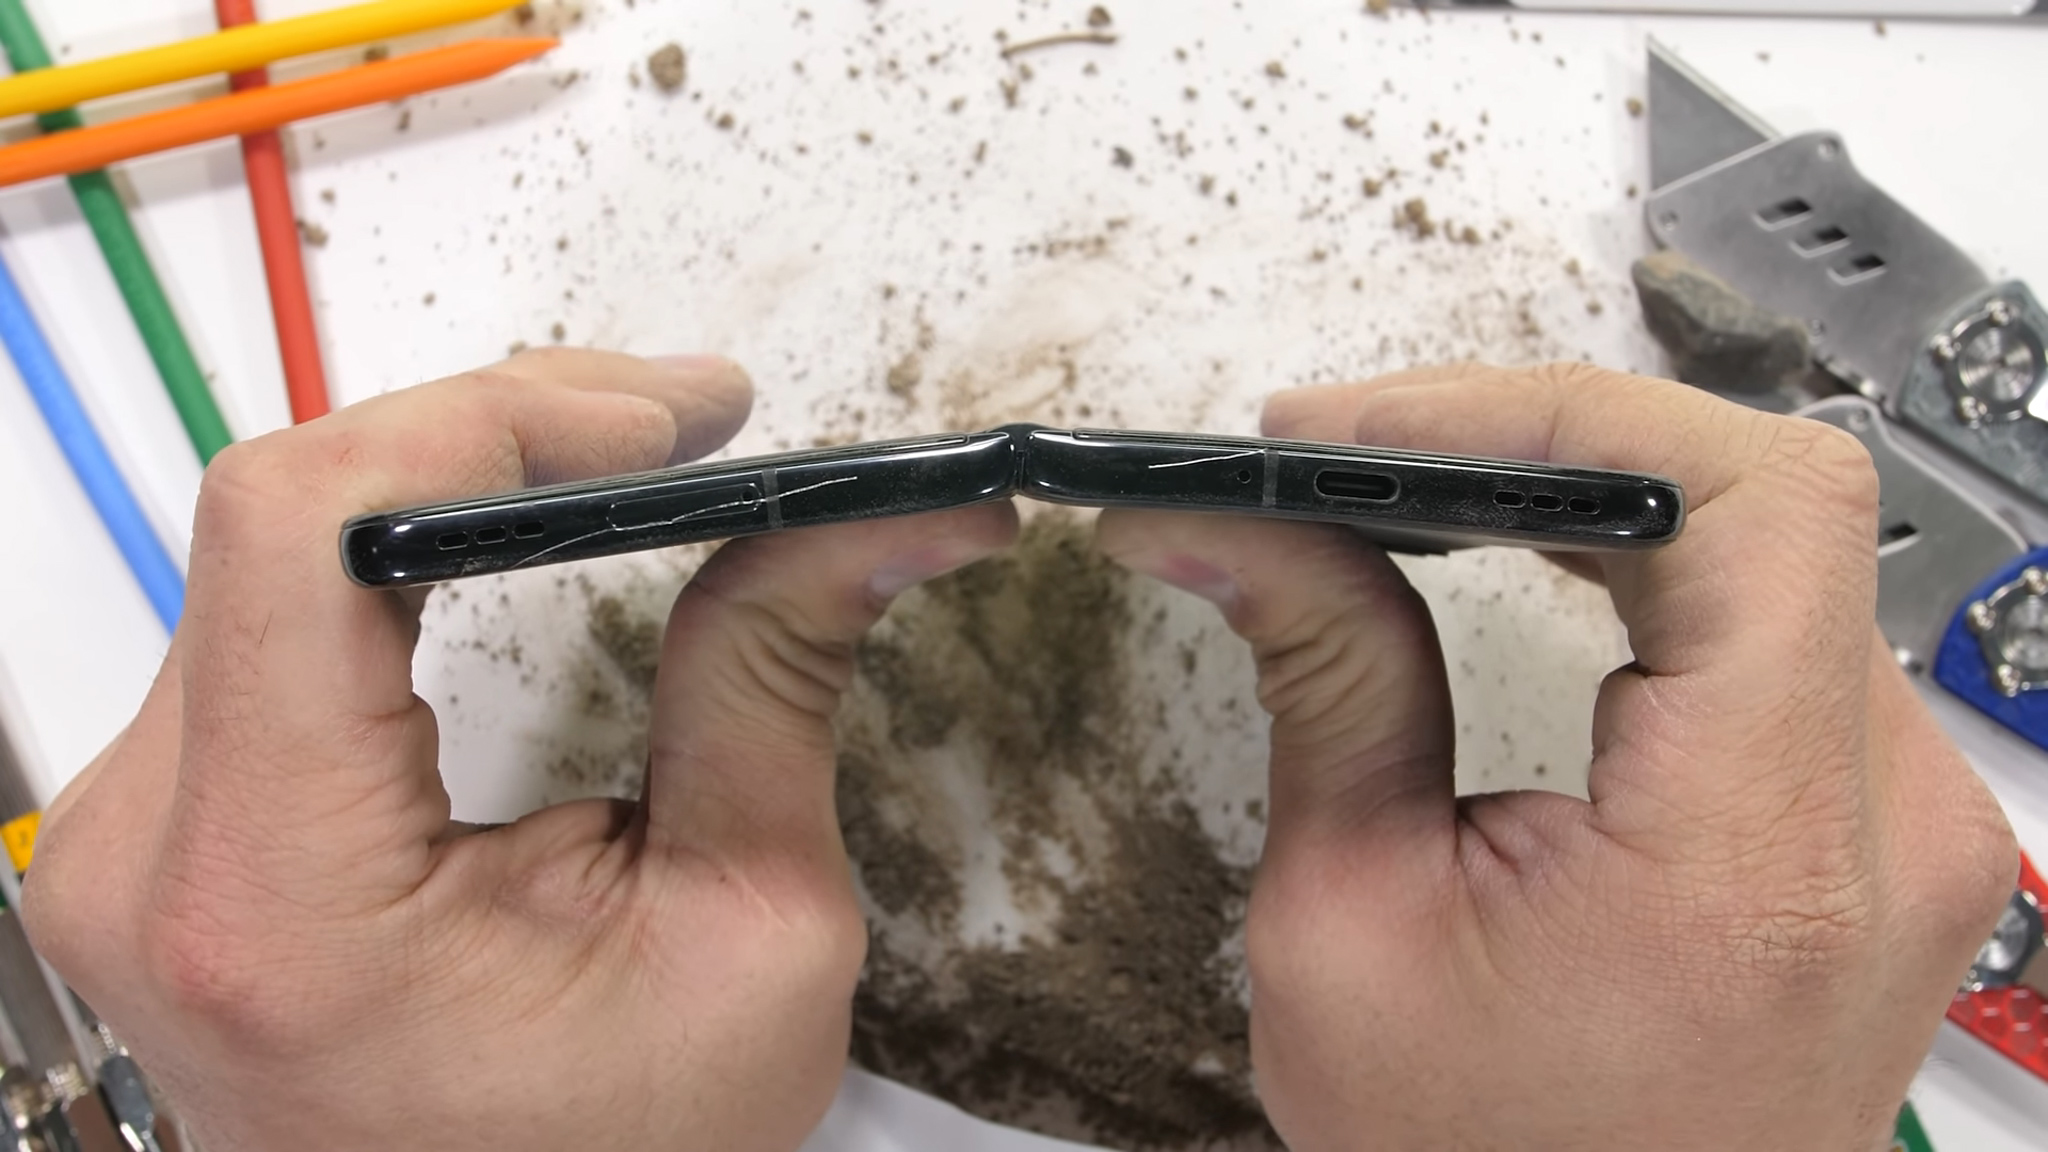 Thử nghiệm độ bền OPPO Find N với cát và vật cứng từ JerryRigEverything